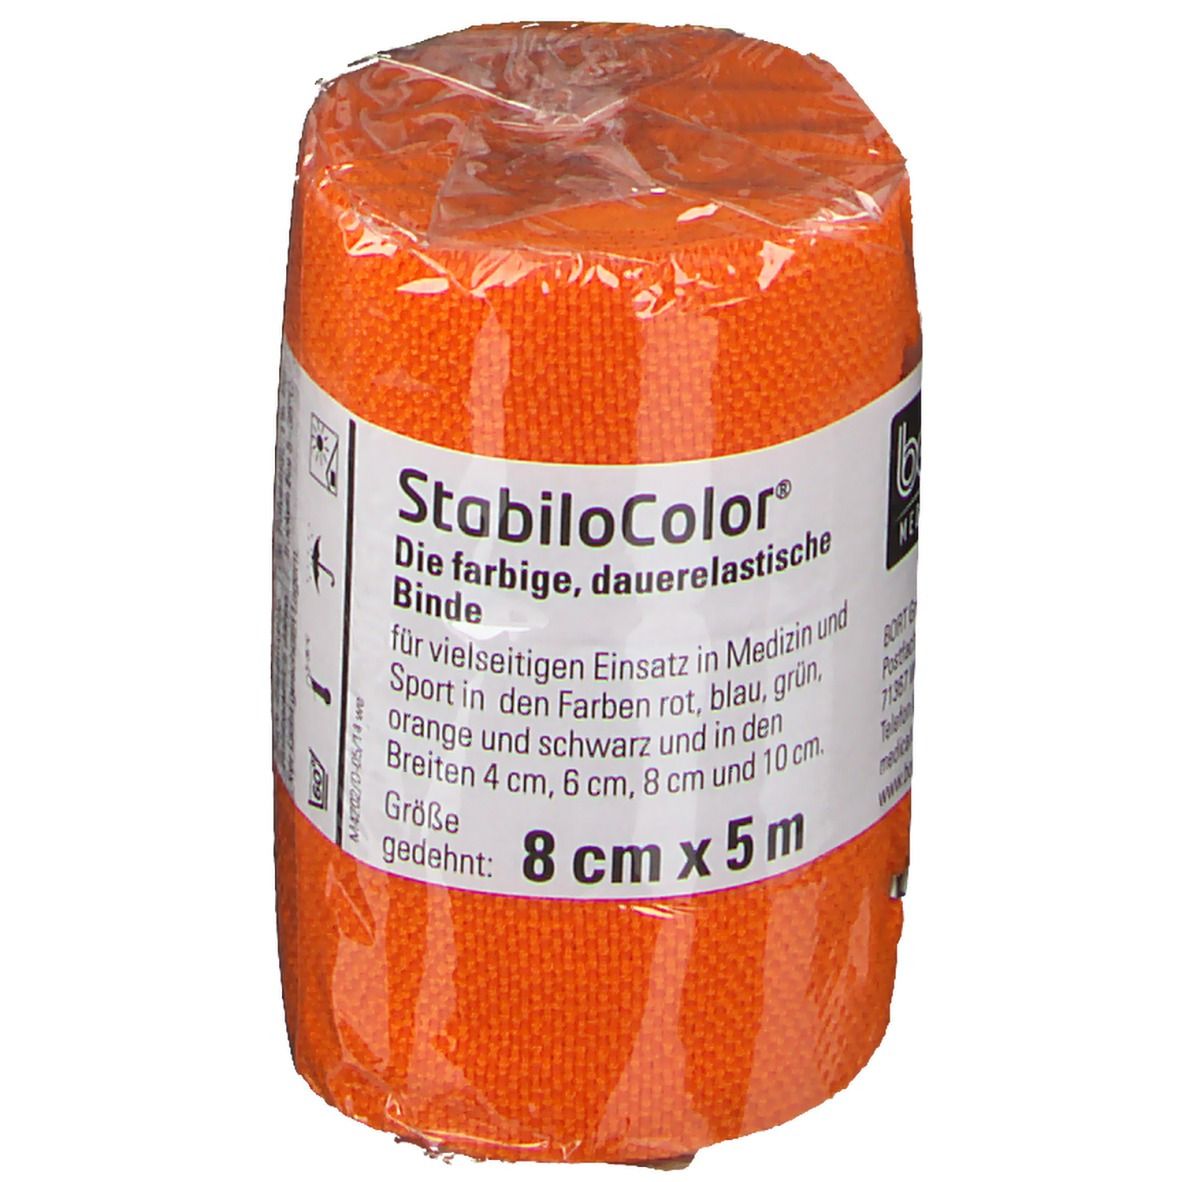 BORT StabiloColor® Binde 8 cm orange